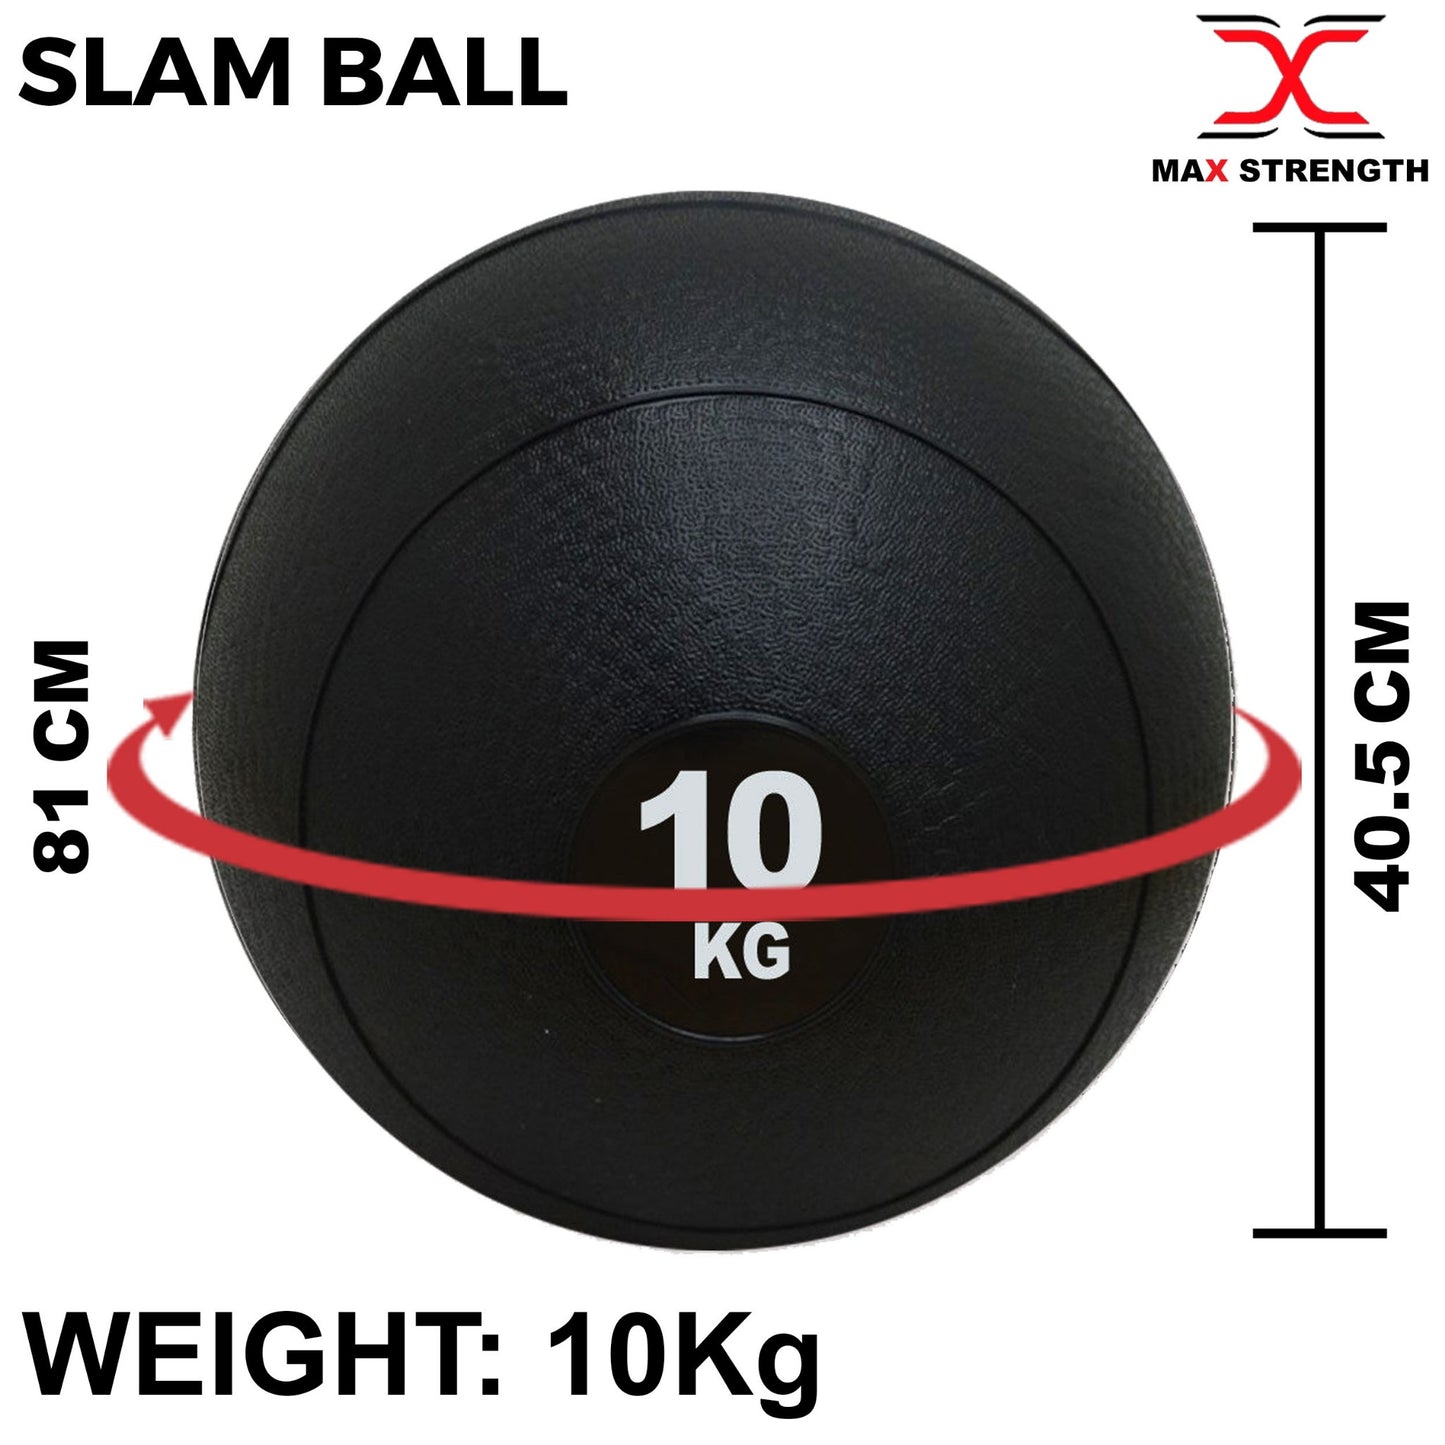 Durable Slam Ball